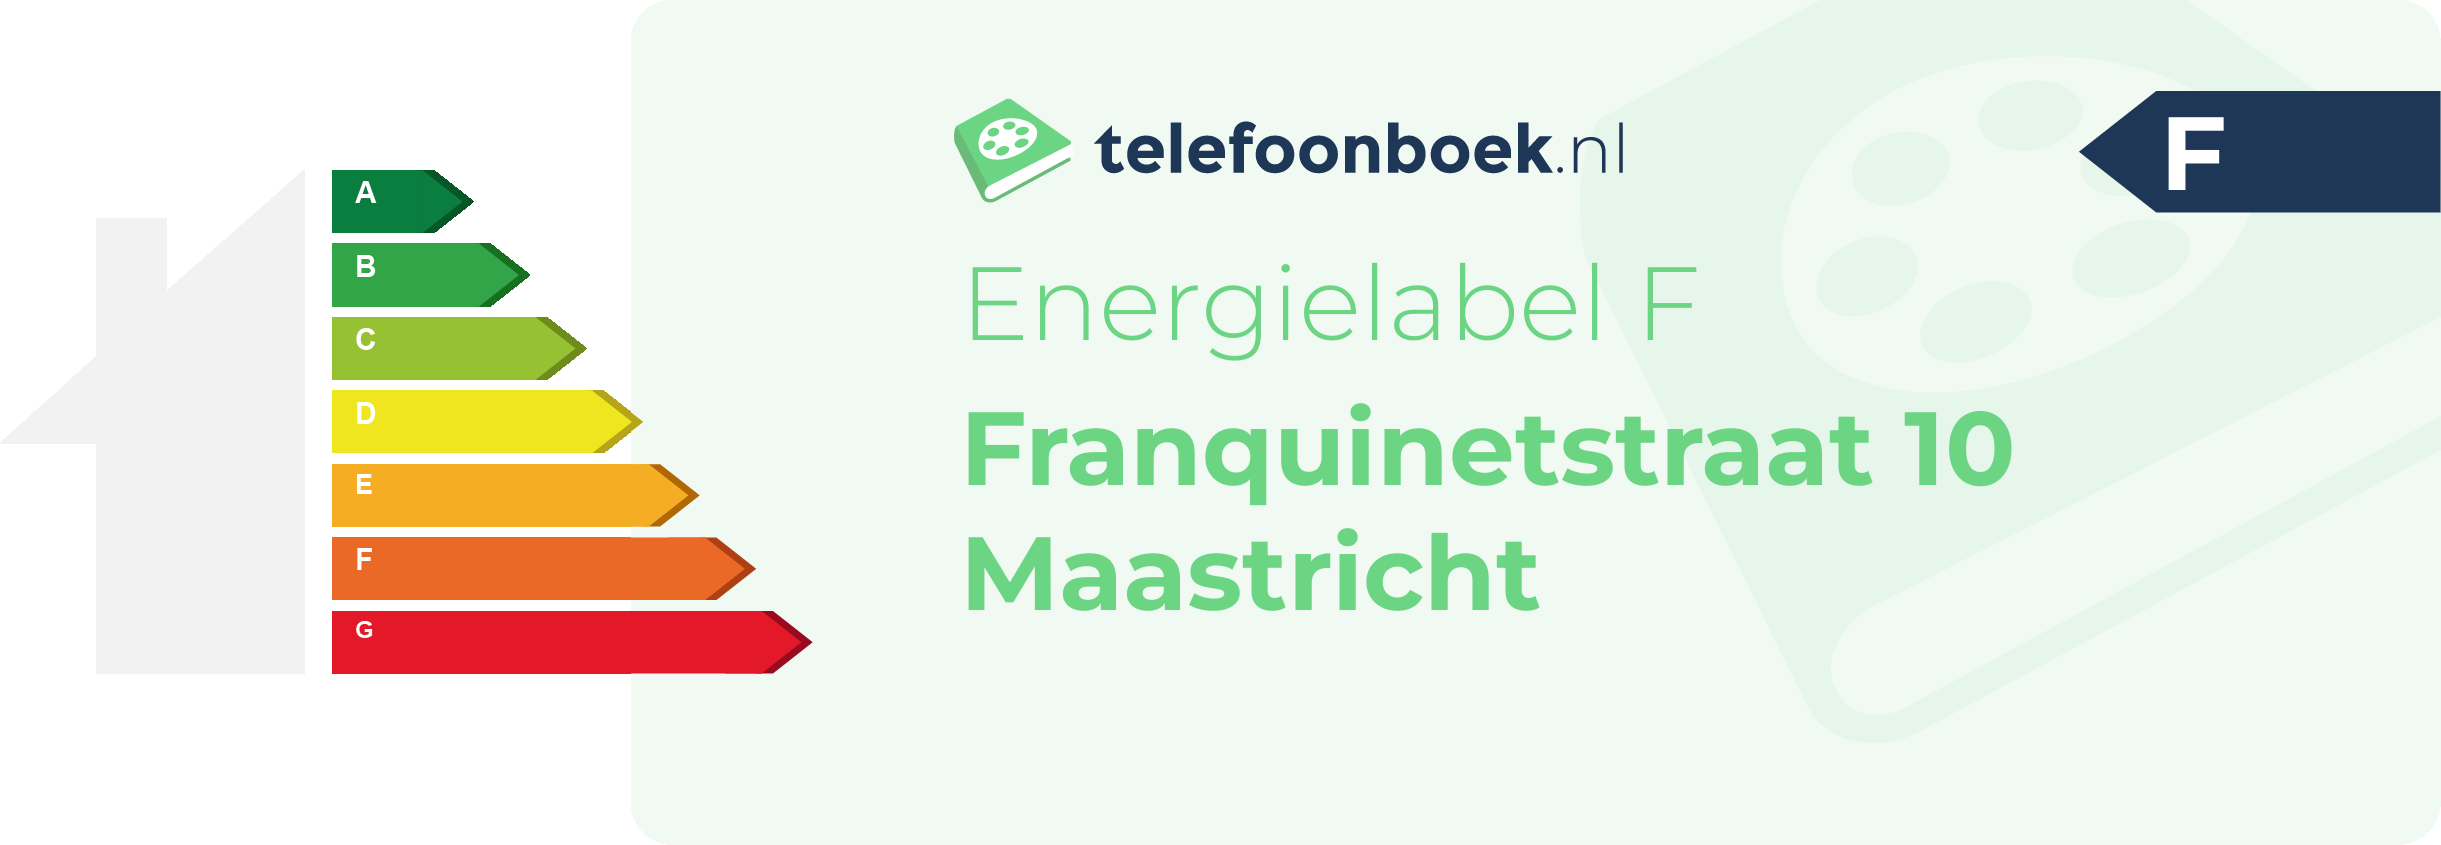 Energielabel Franquinetstraat 10 Maastricht